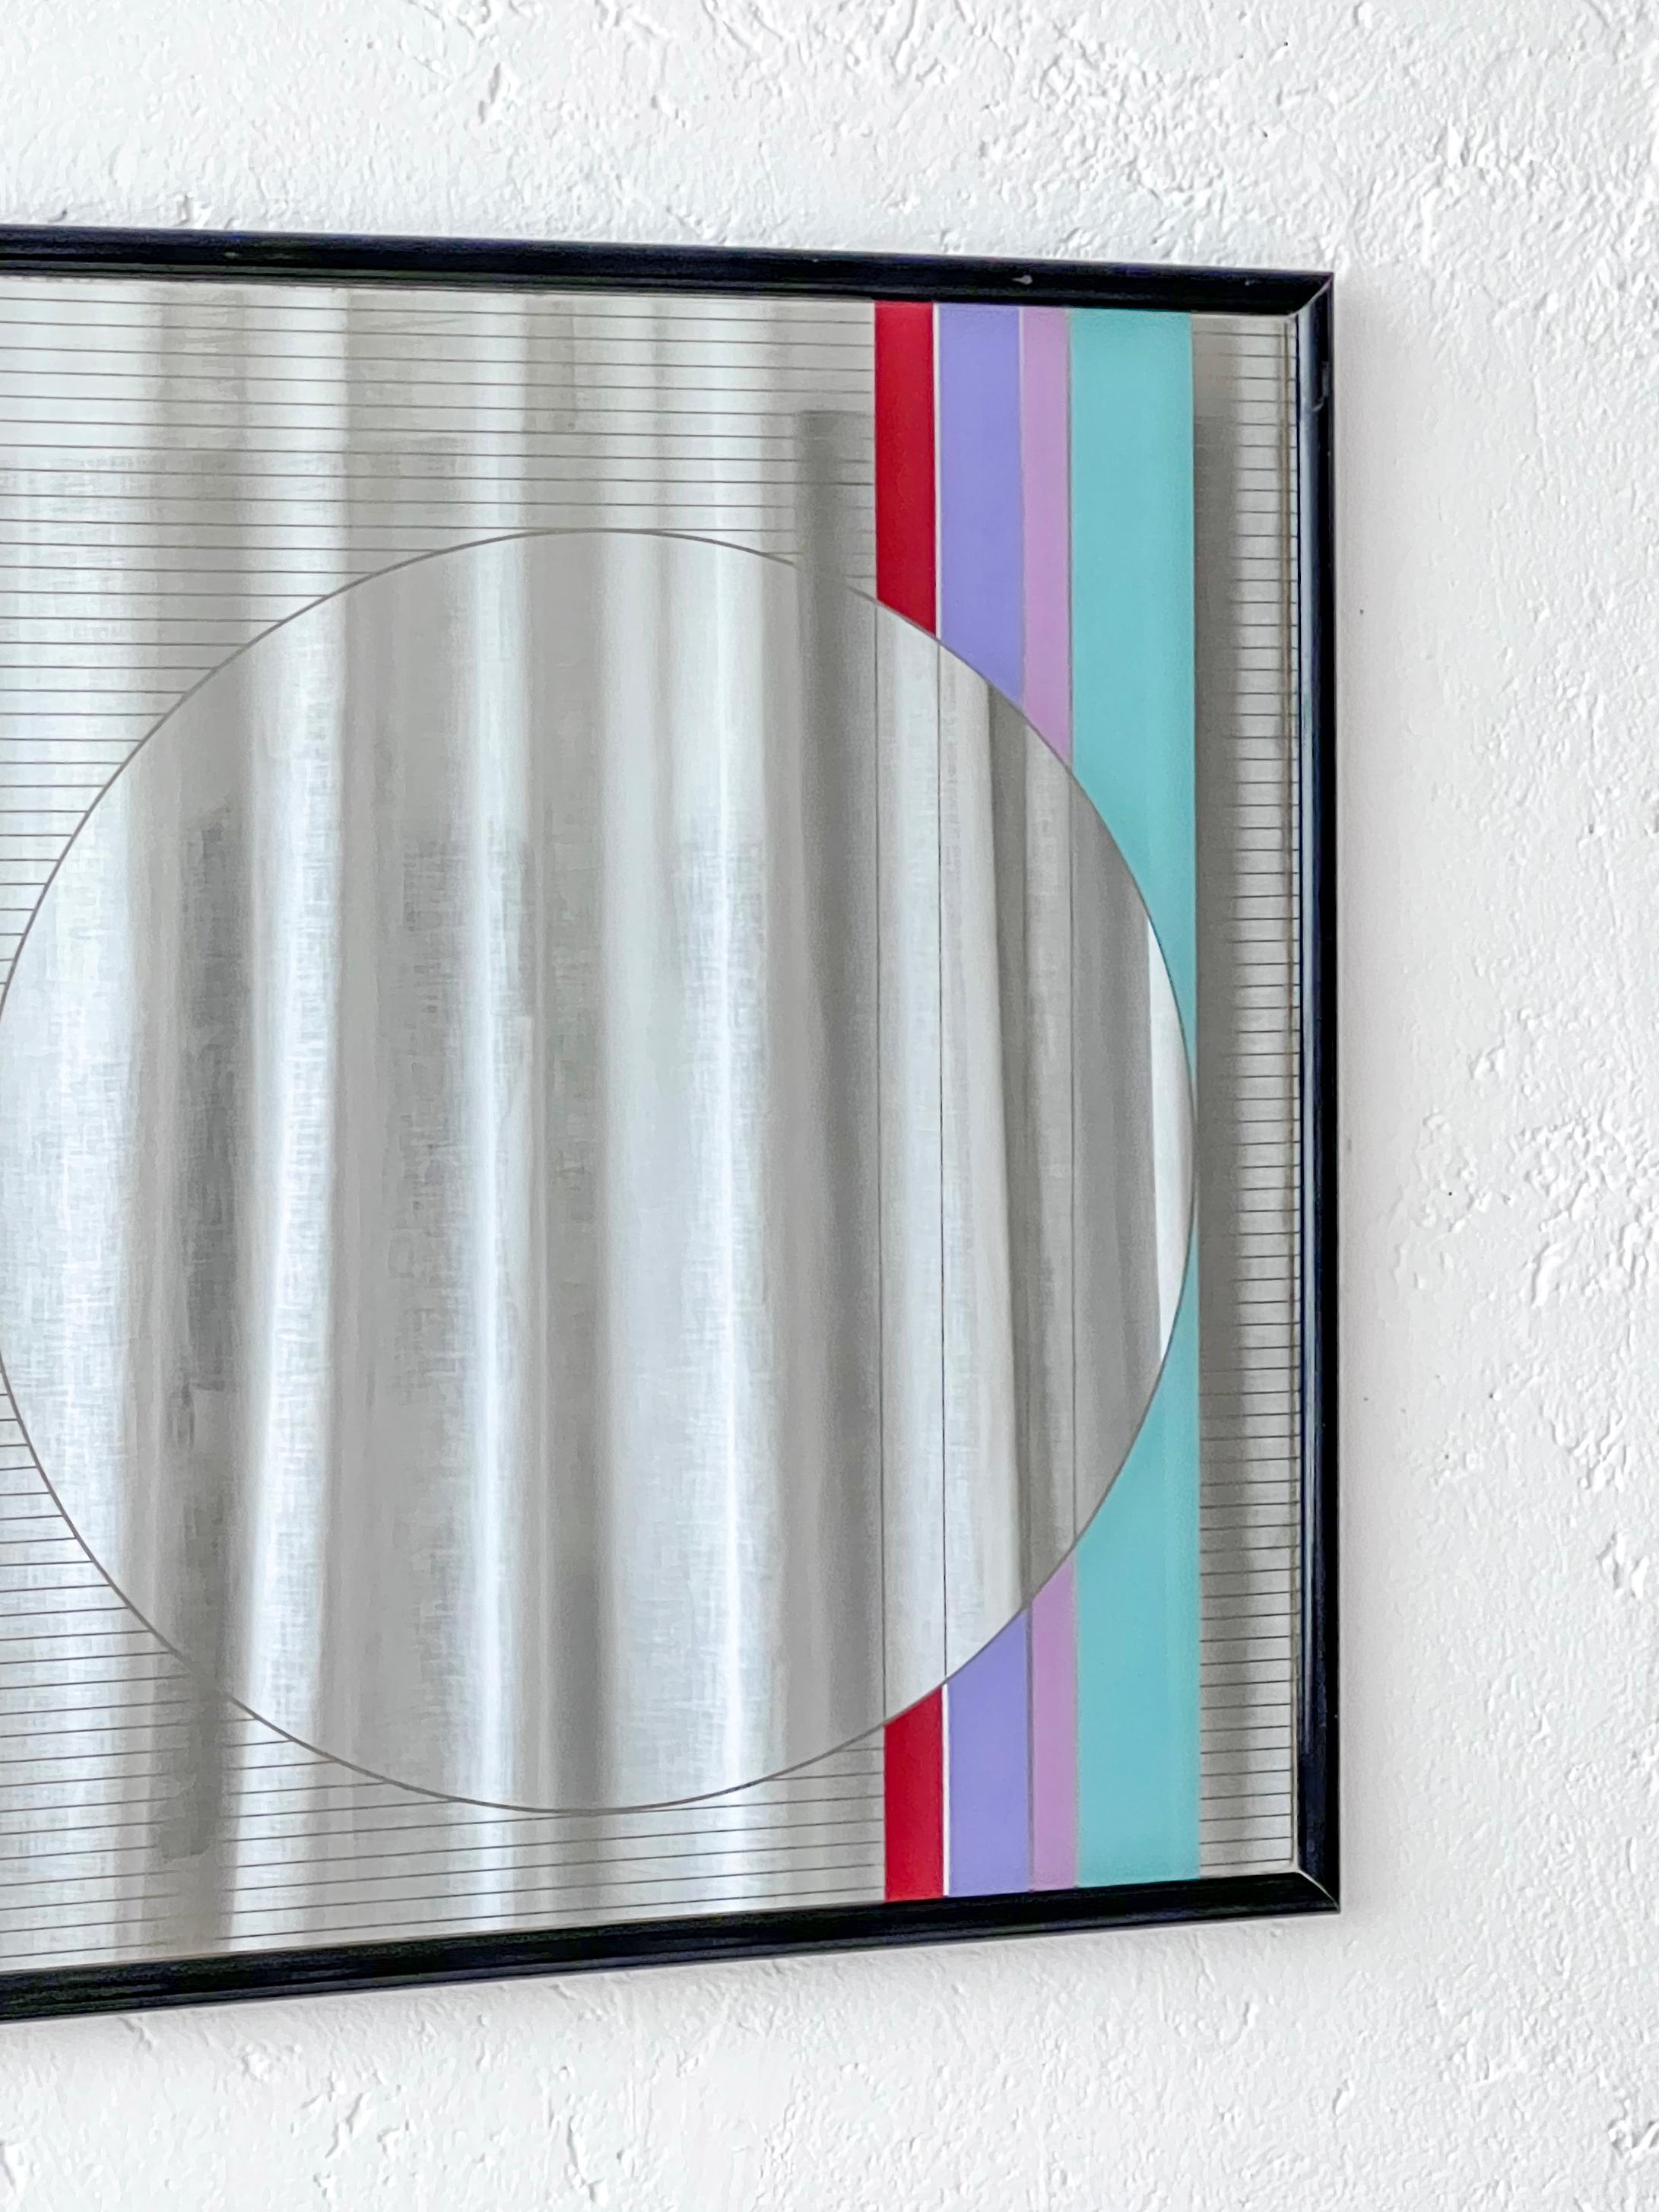 Dekorativer geometrischer Wandspiegel des italienischen Künstlers Eugenio Carmi für die Möbelmarke Acerbis. Dieser in den 1980er Jahren entworfene Spiegel mit dem Namen 